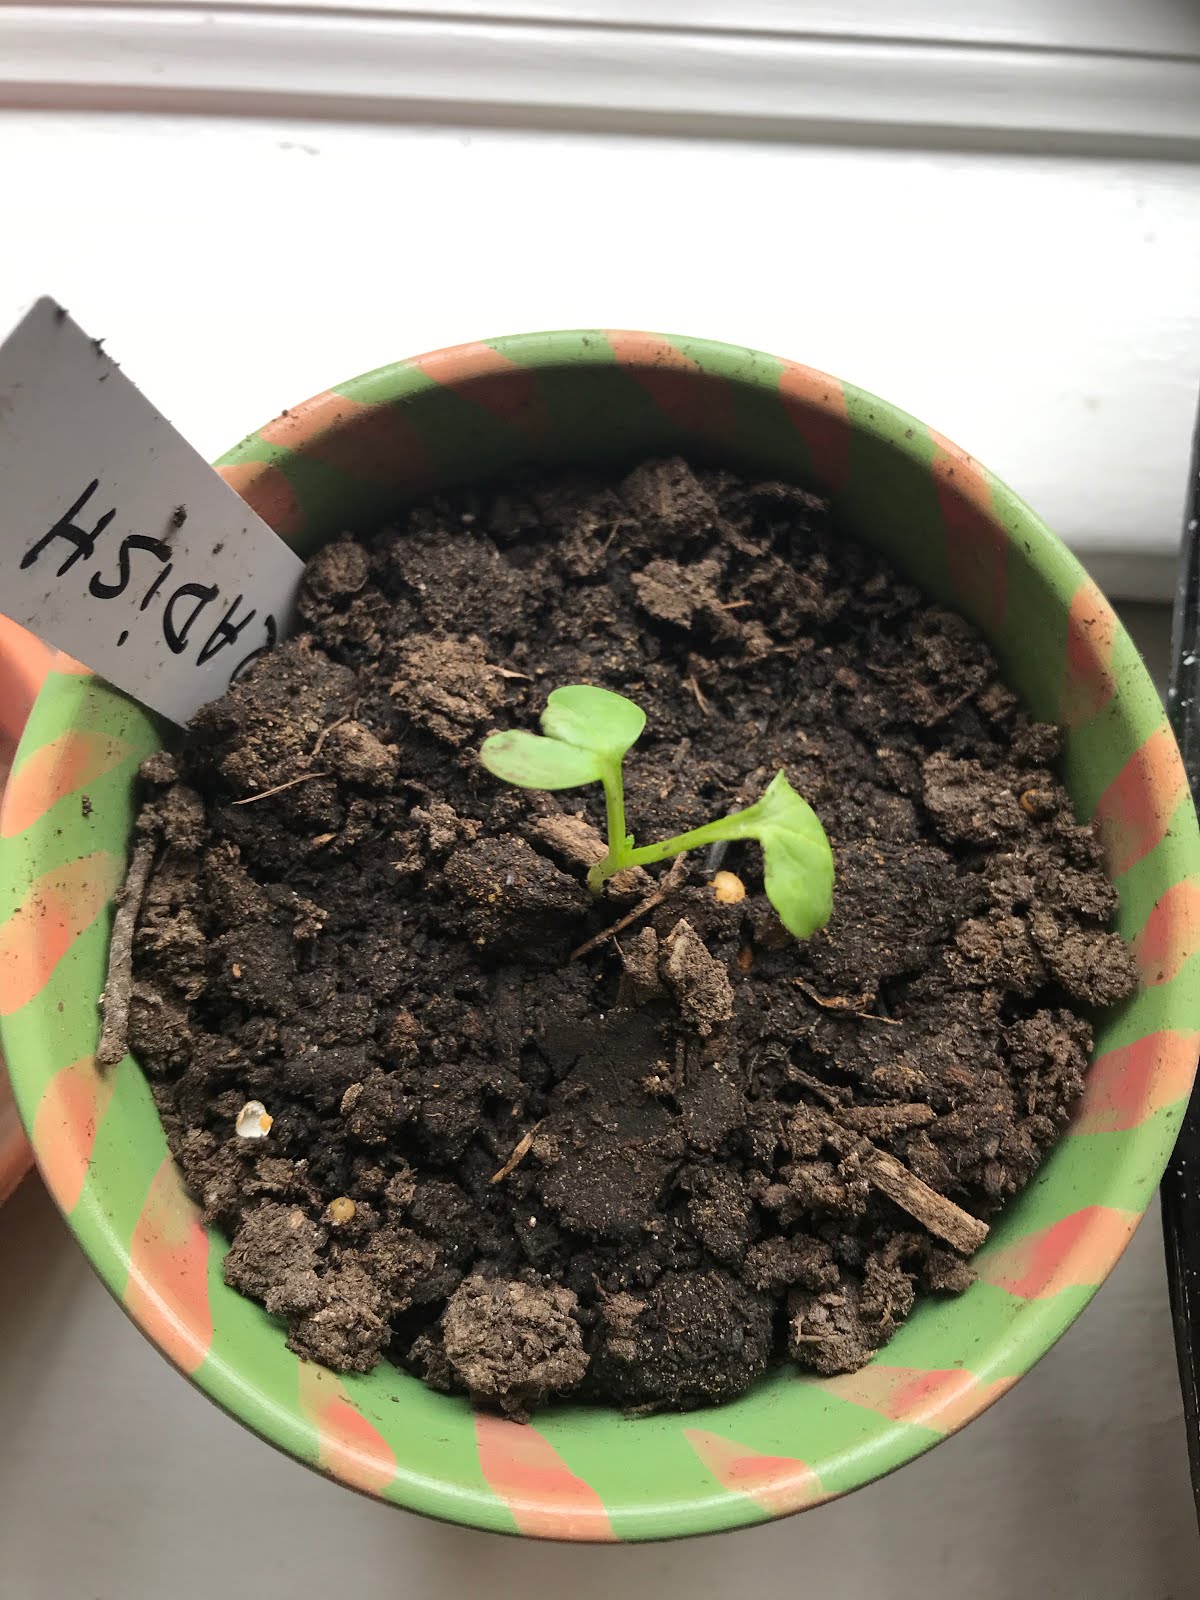 Transplanting Seedlings | Julie's Creative Lifestyle